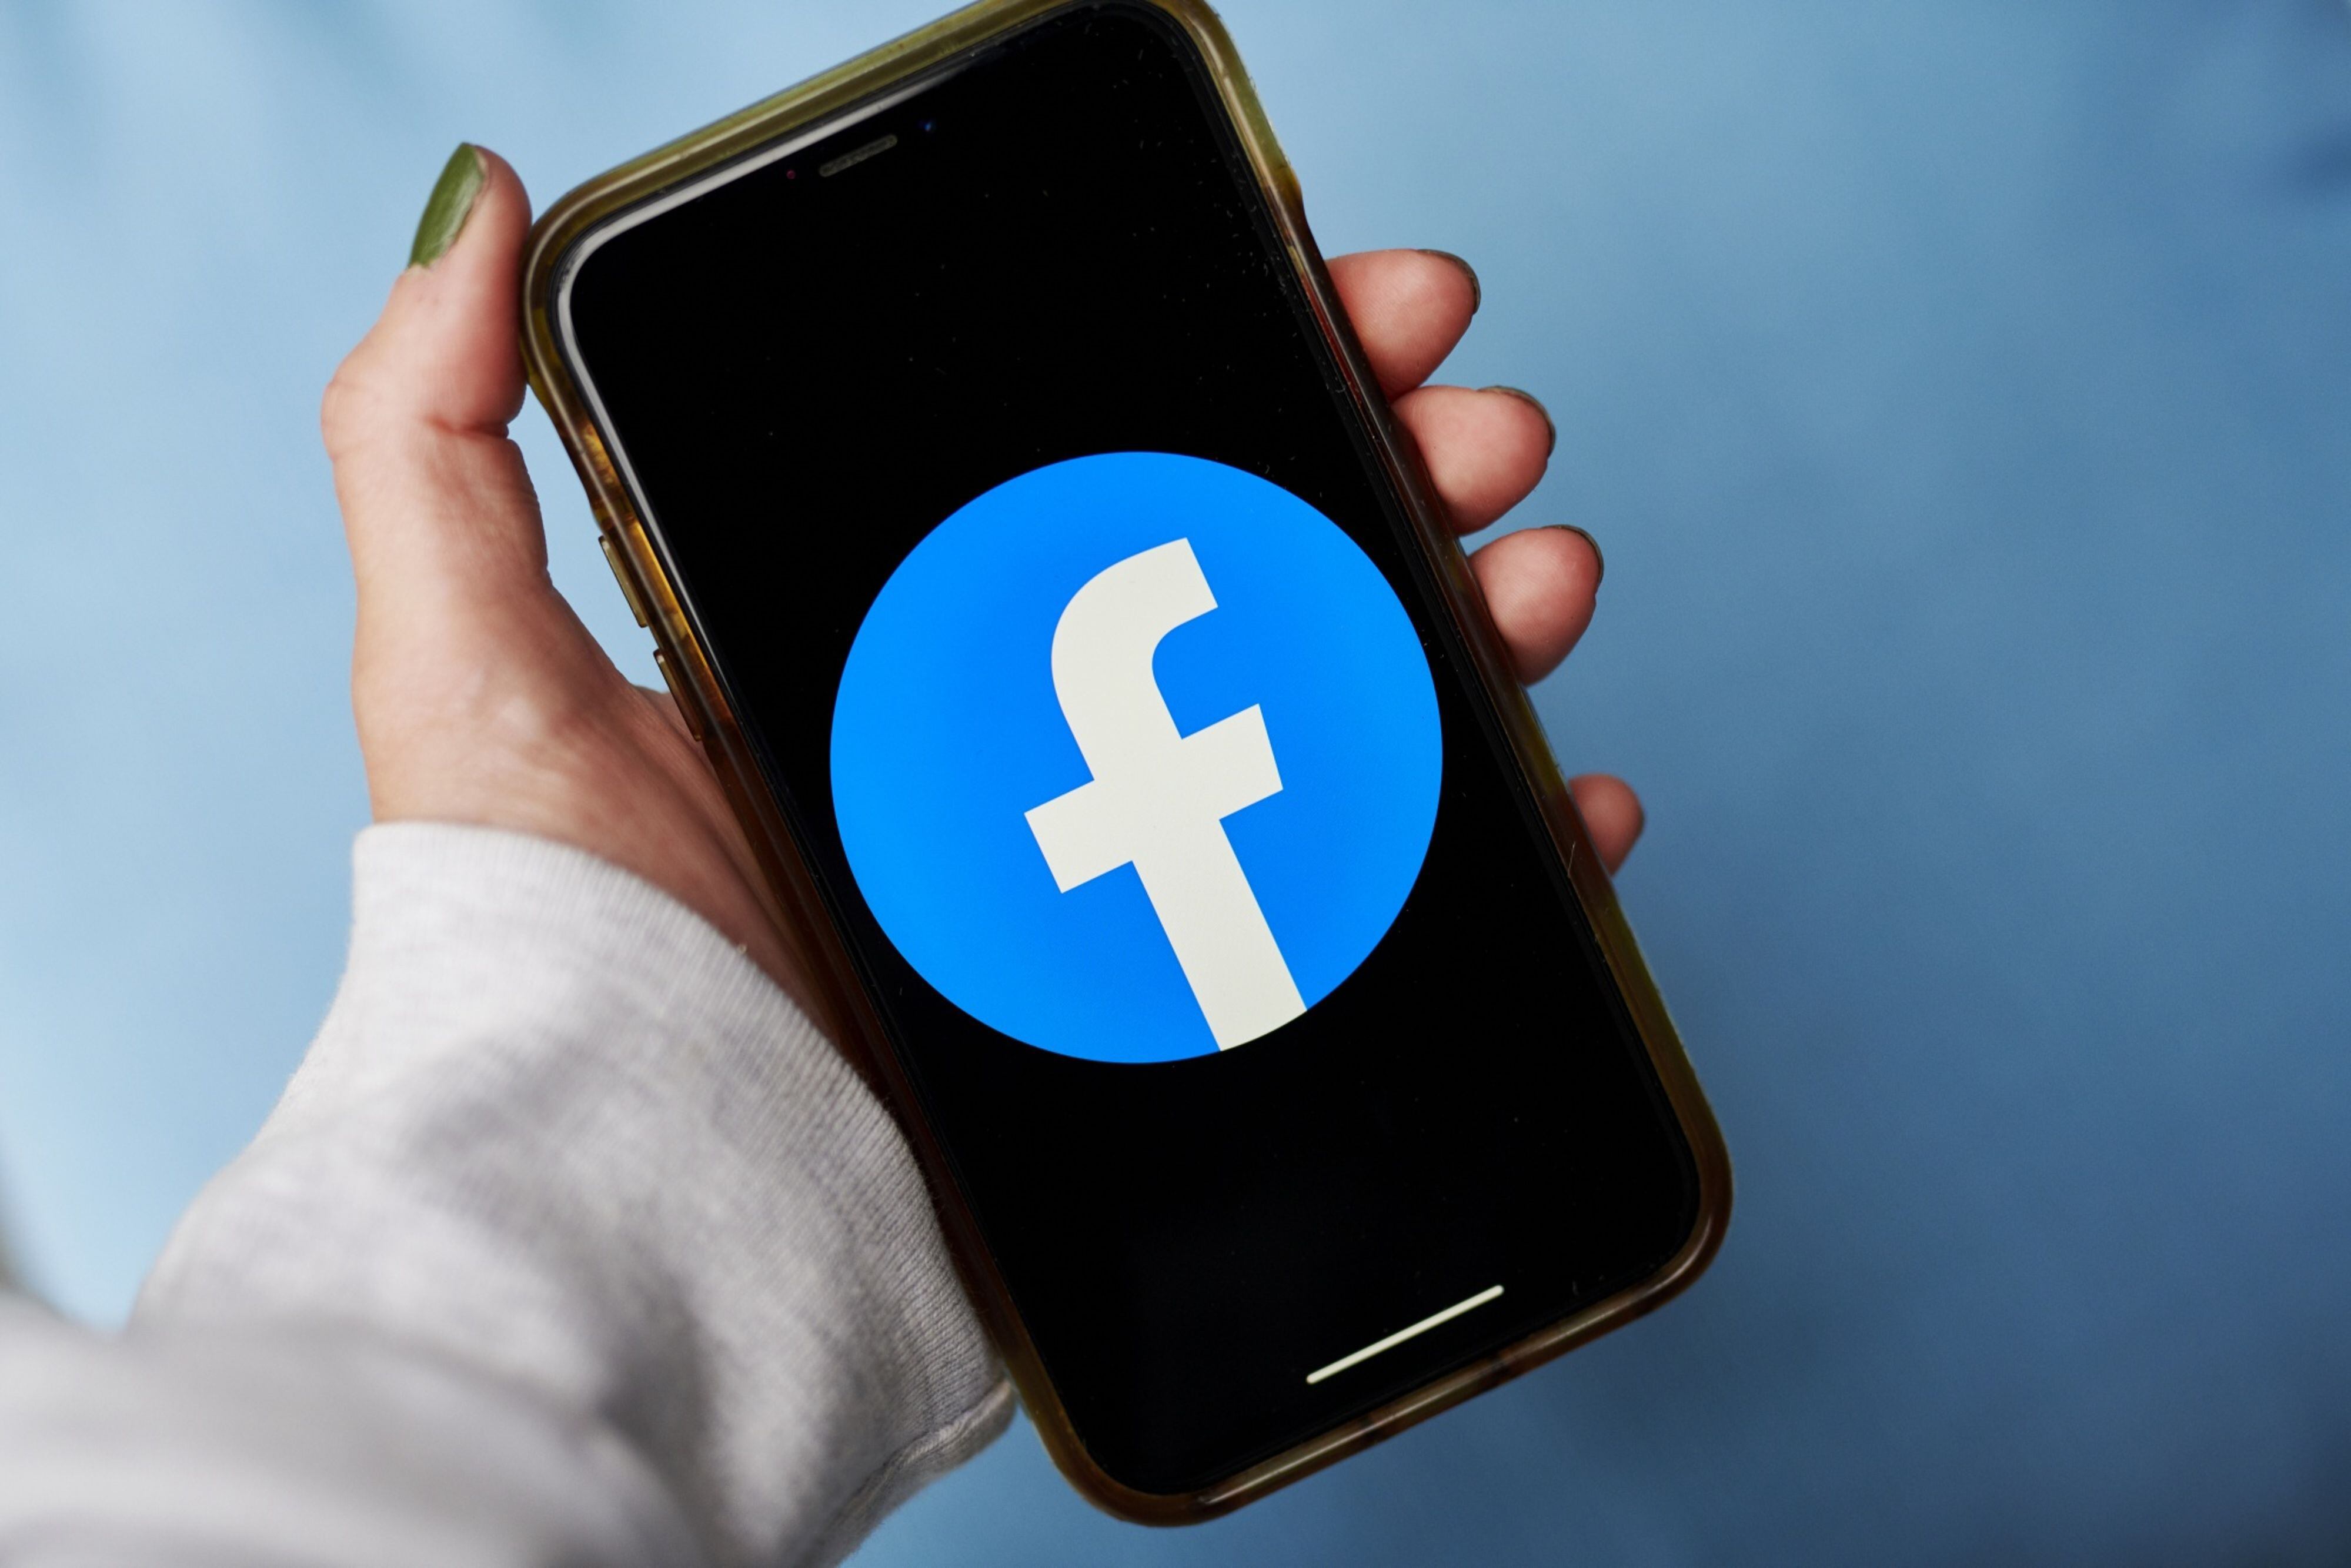 Facebook restringe ventas por video, pero Meta ofrece otras opciones